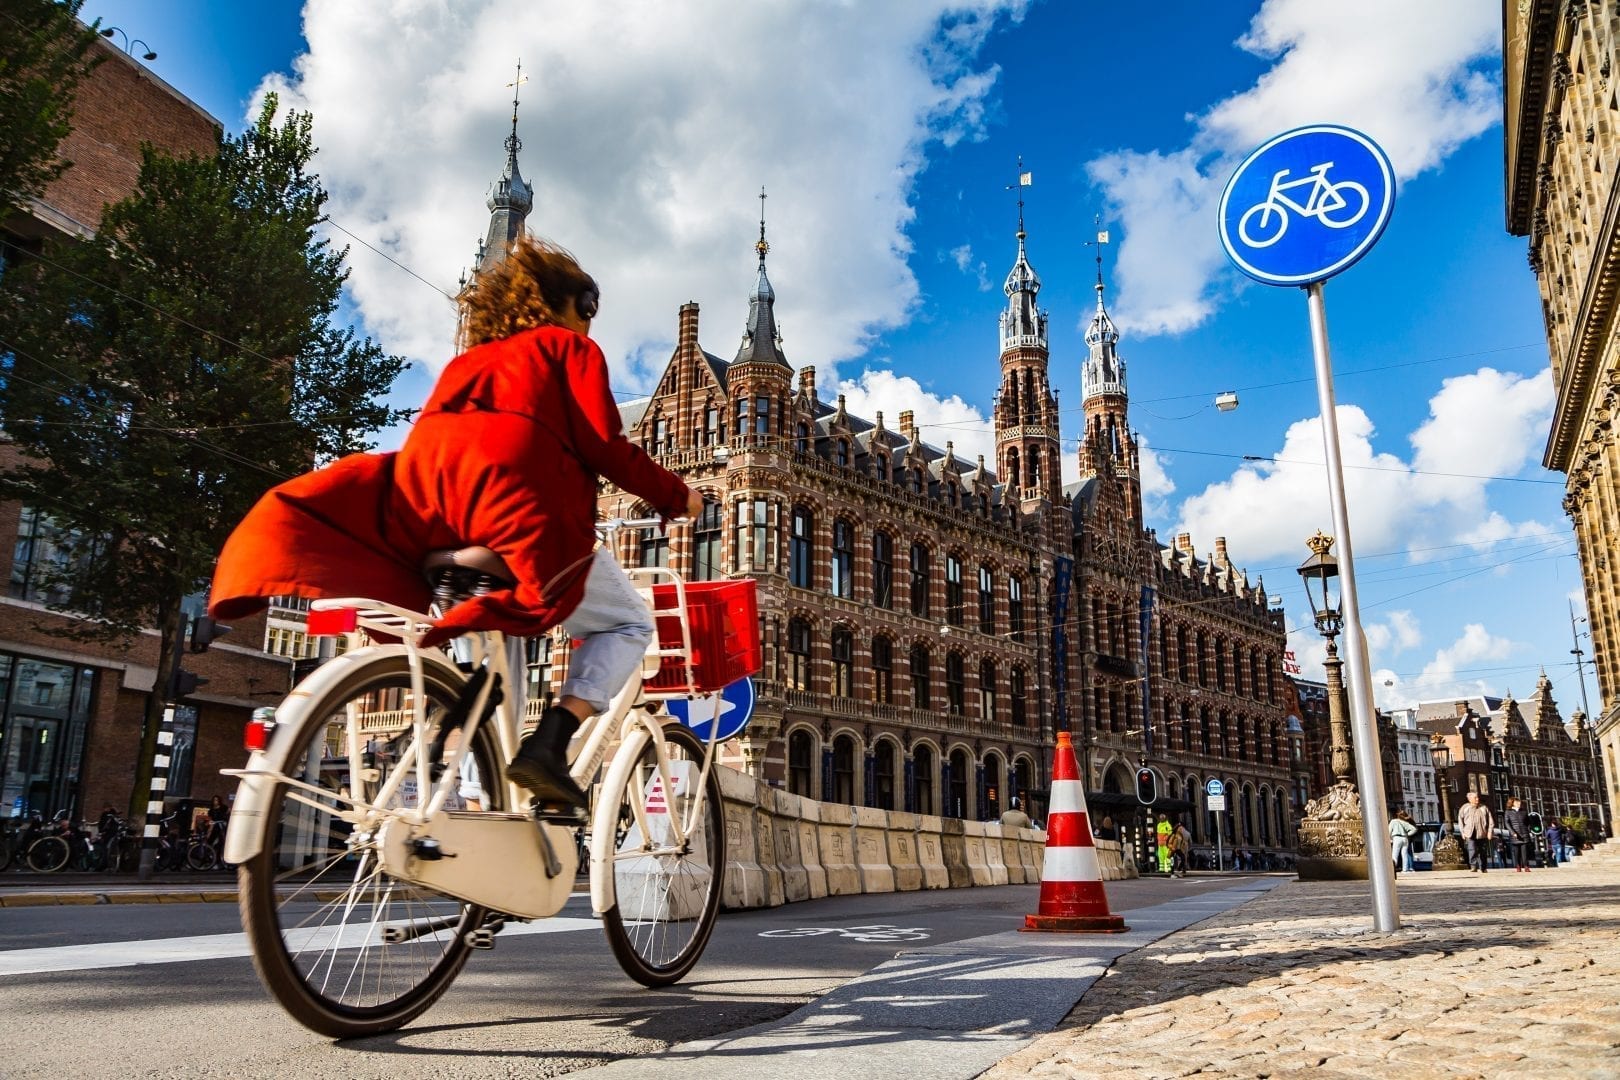 fiets van de zaak met de leasefiets volgens het fietsplan 2020